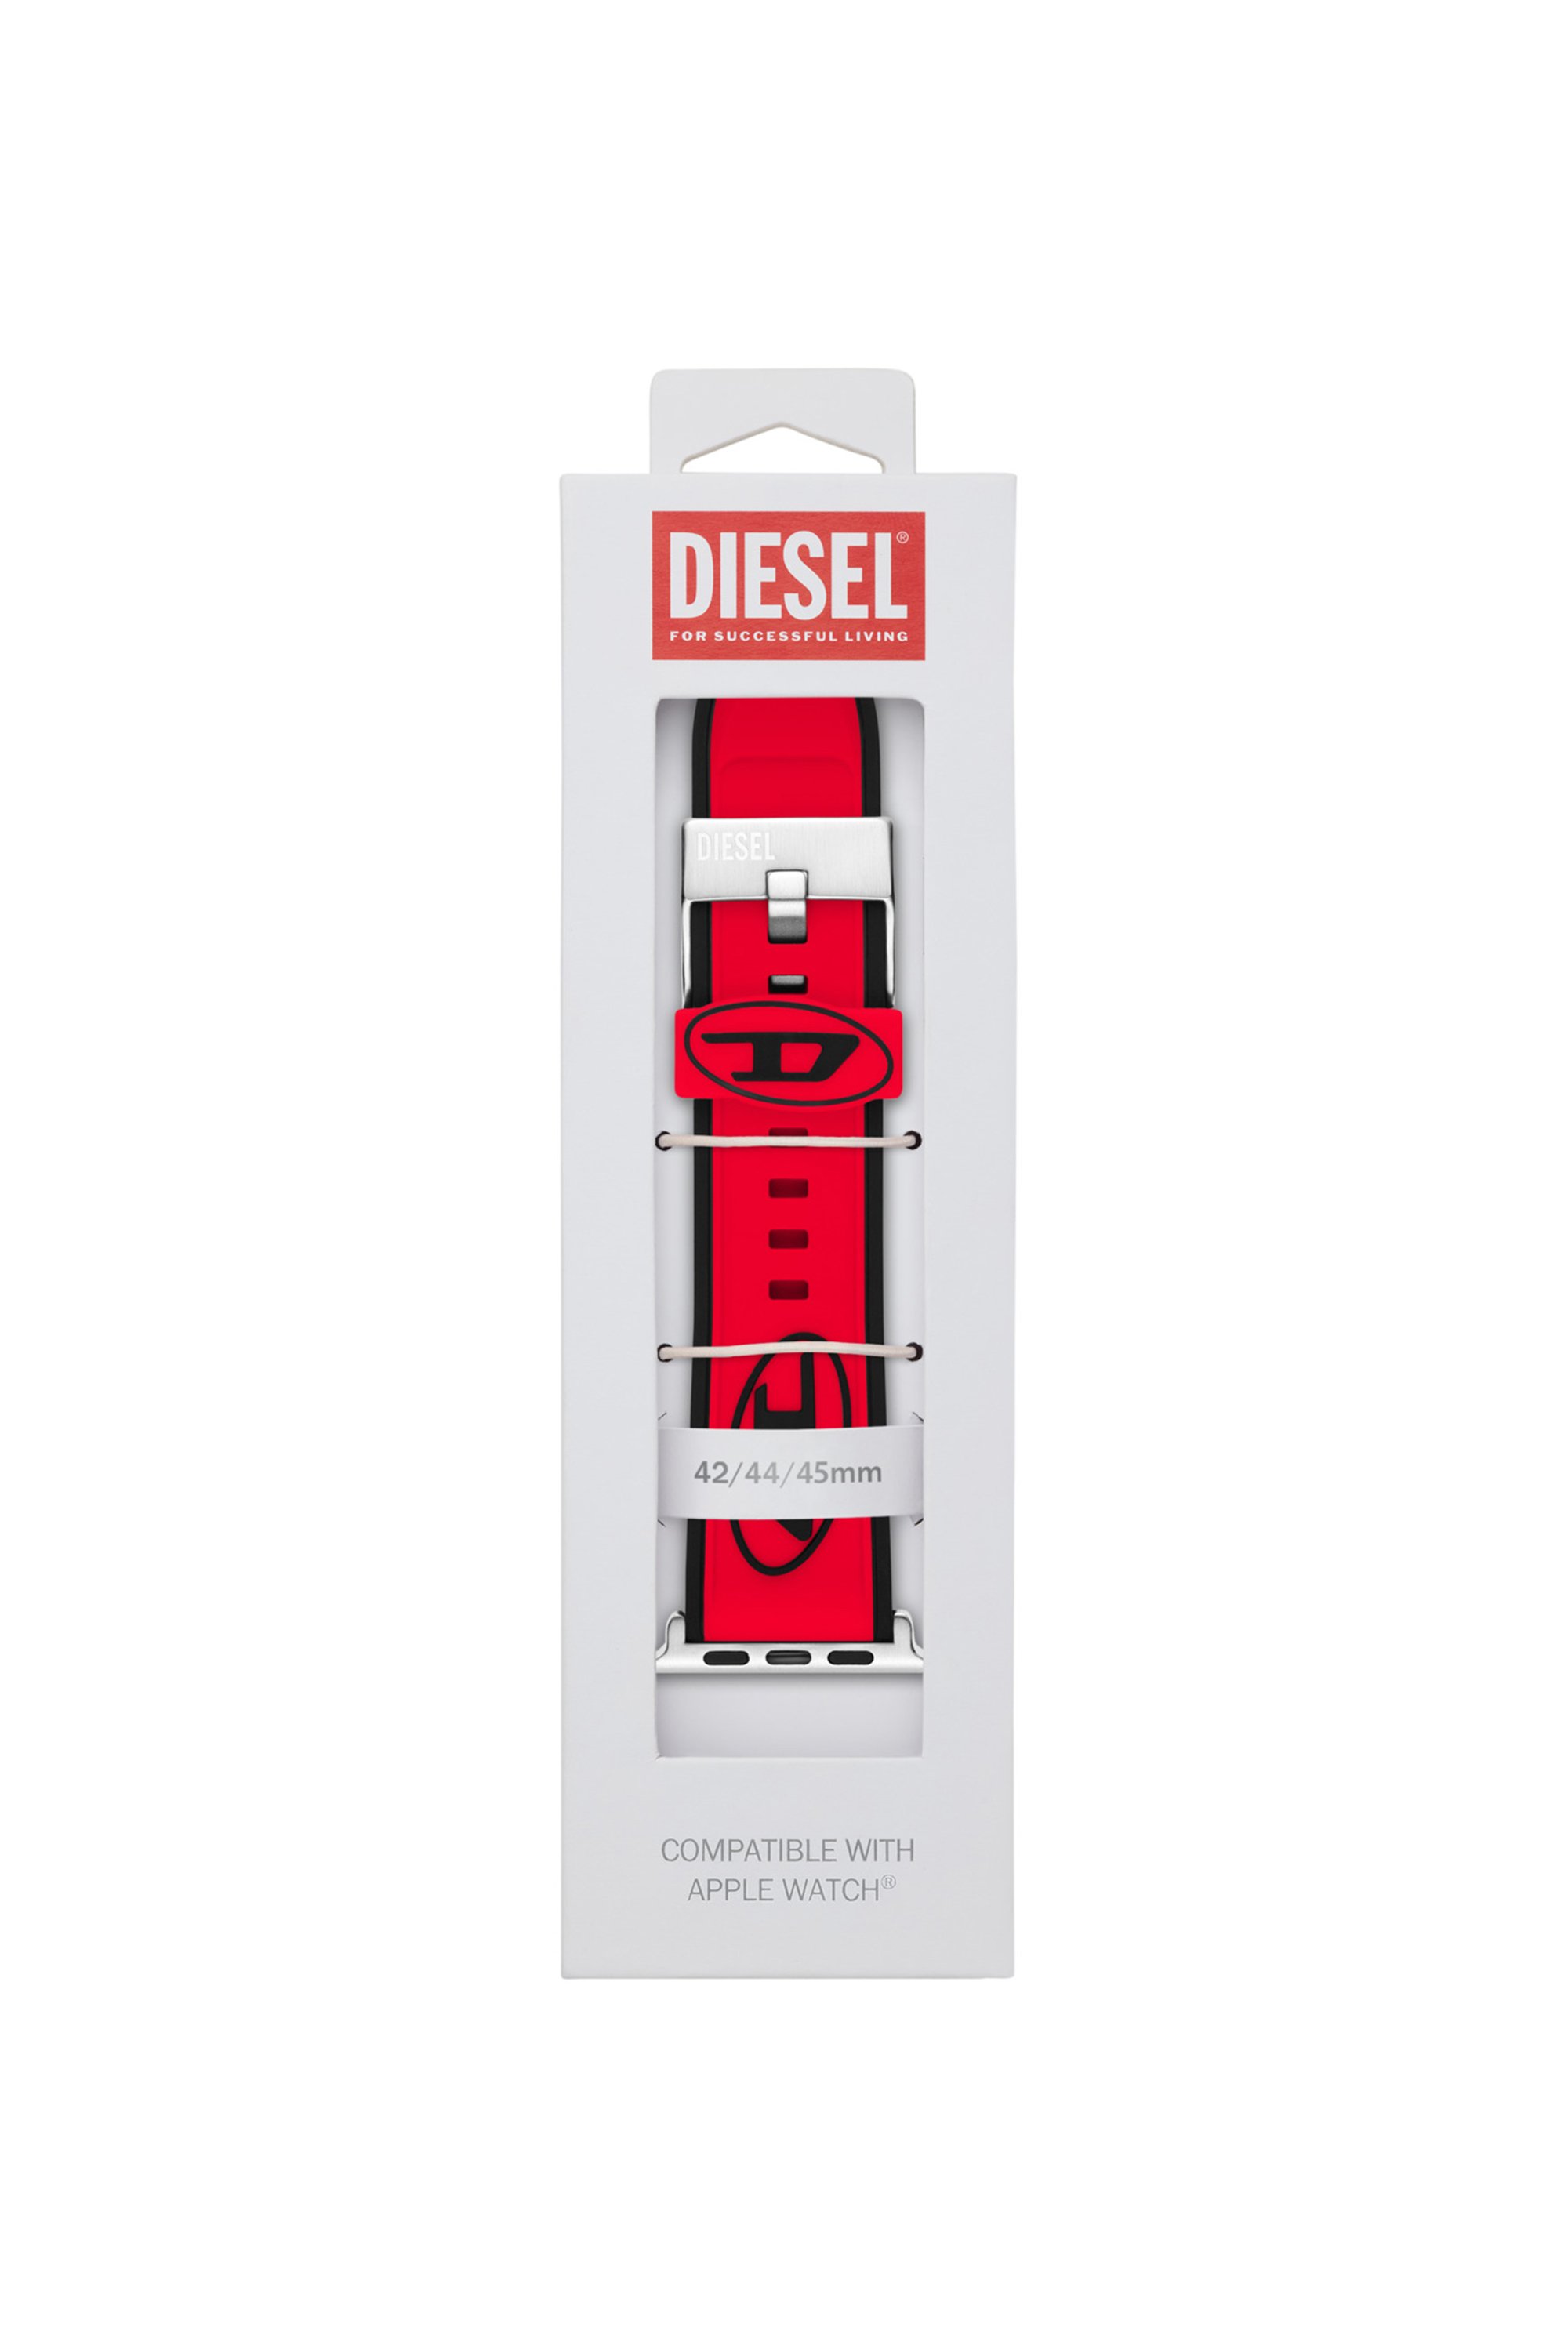 Diesel - DSS010, Mixte Bracelet de montre en silicone pour l'Apple Watch®, 42mm, 44mm, et 45mm. in Rouge - Image 2